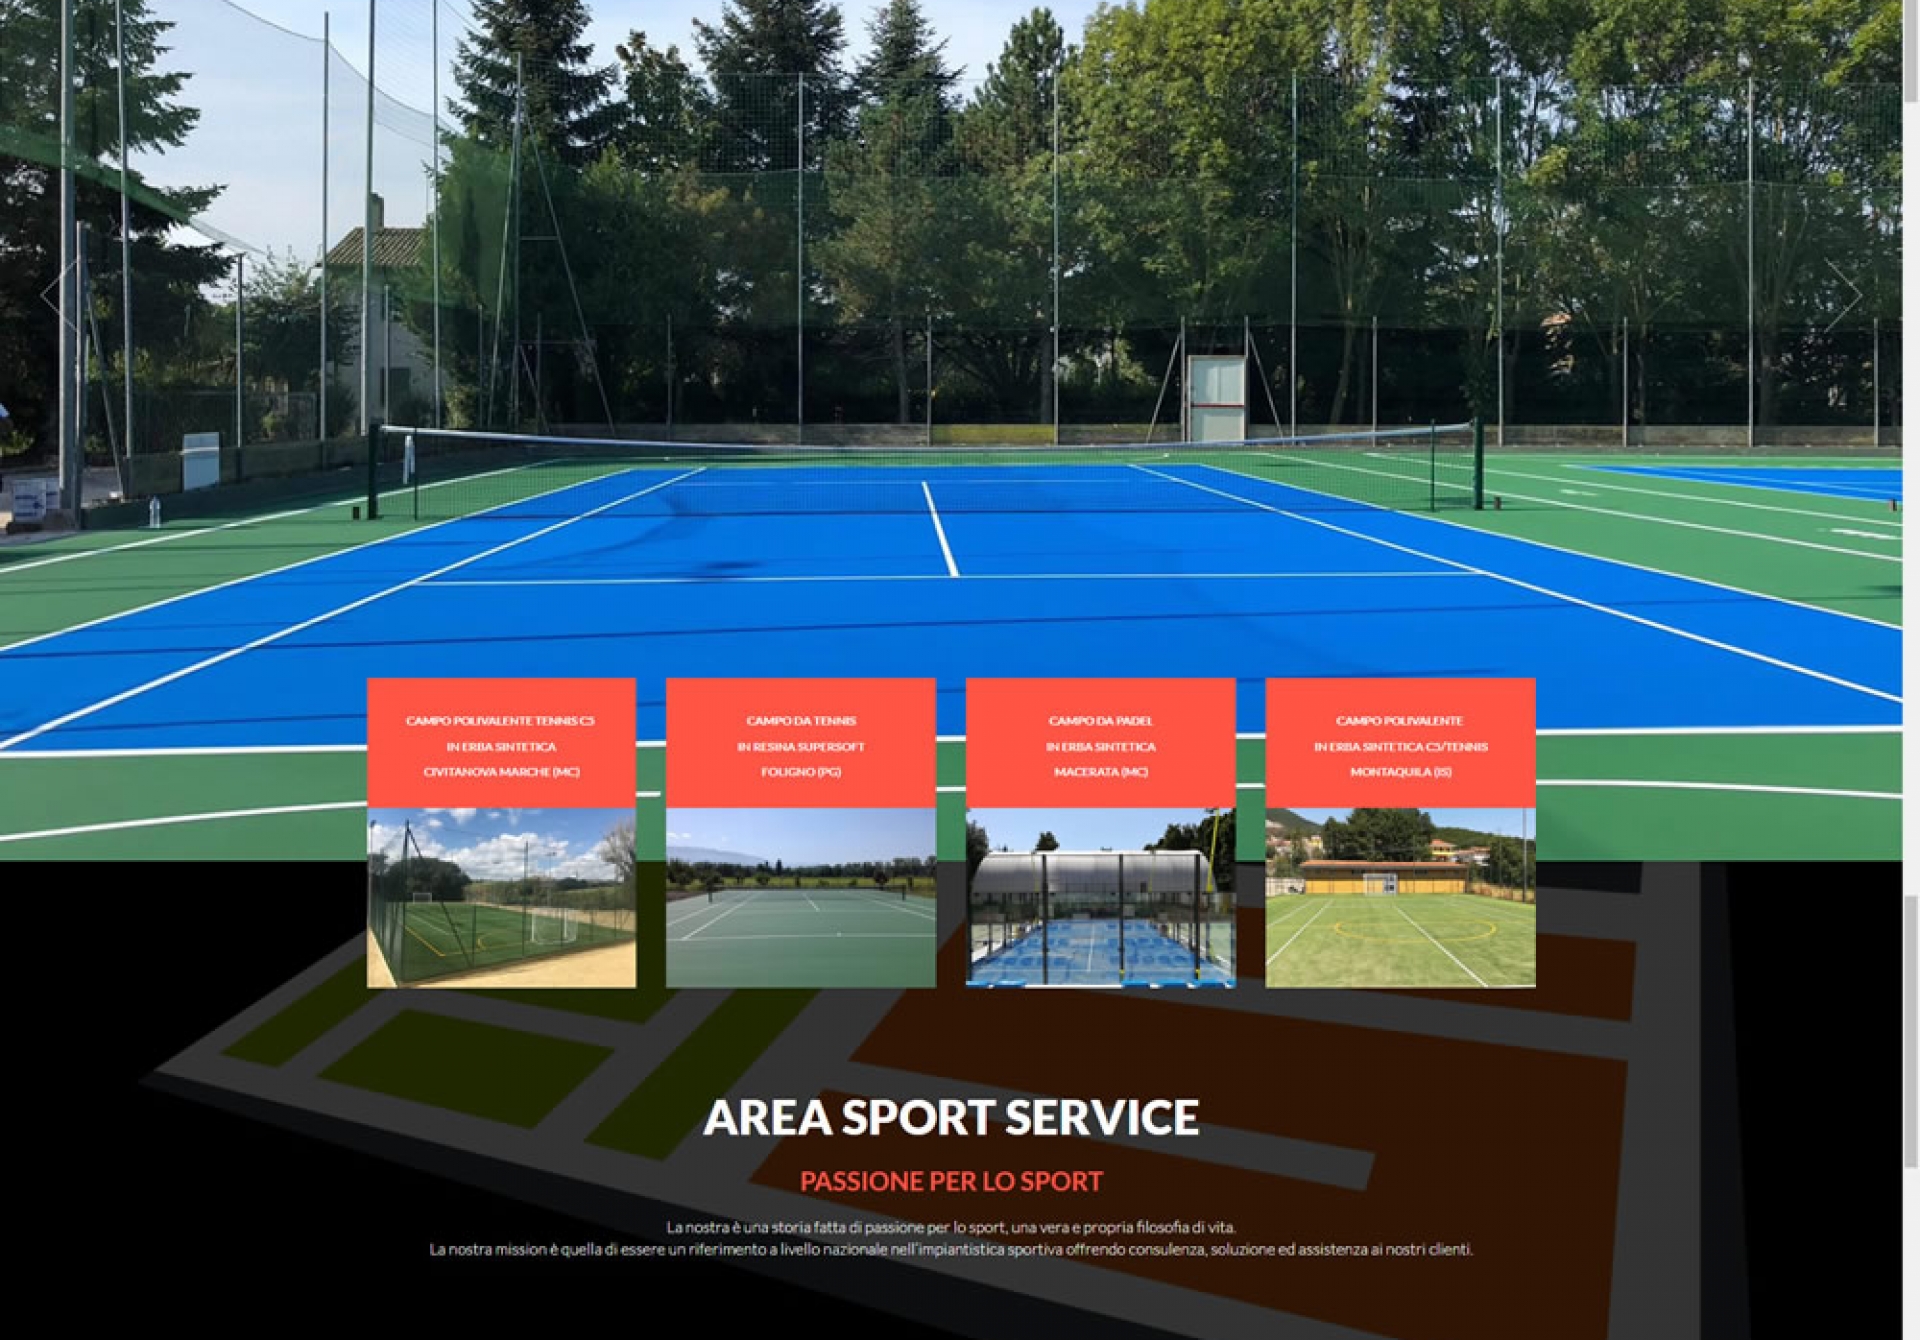 Area sport service